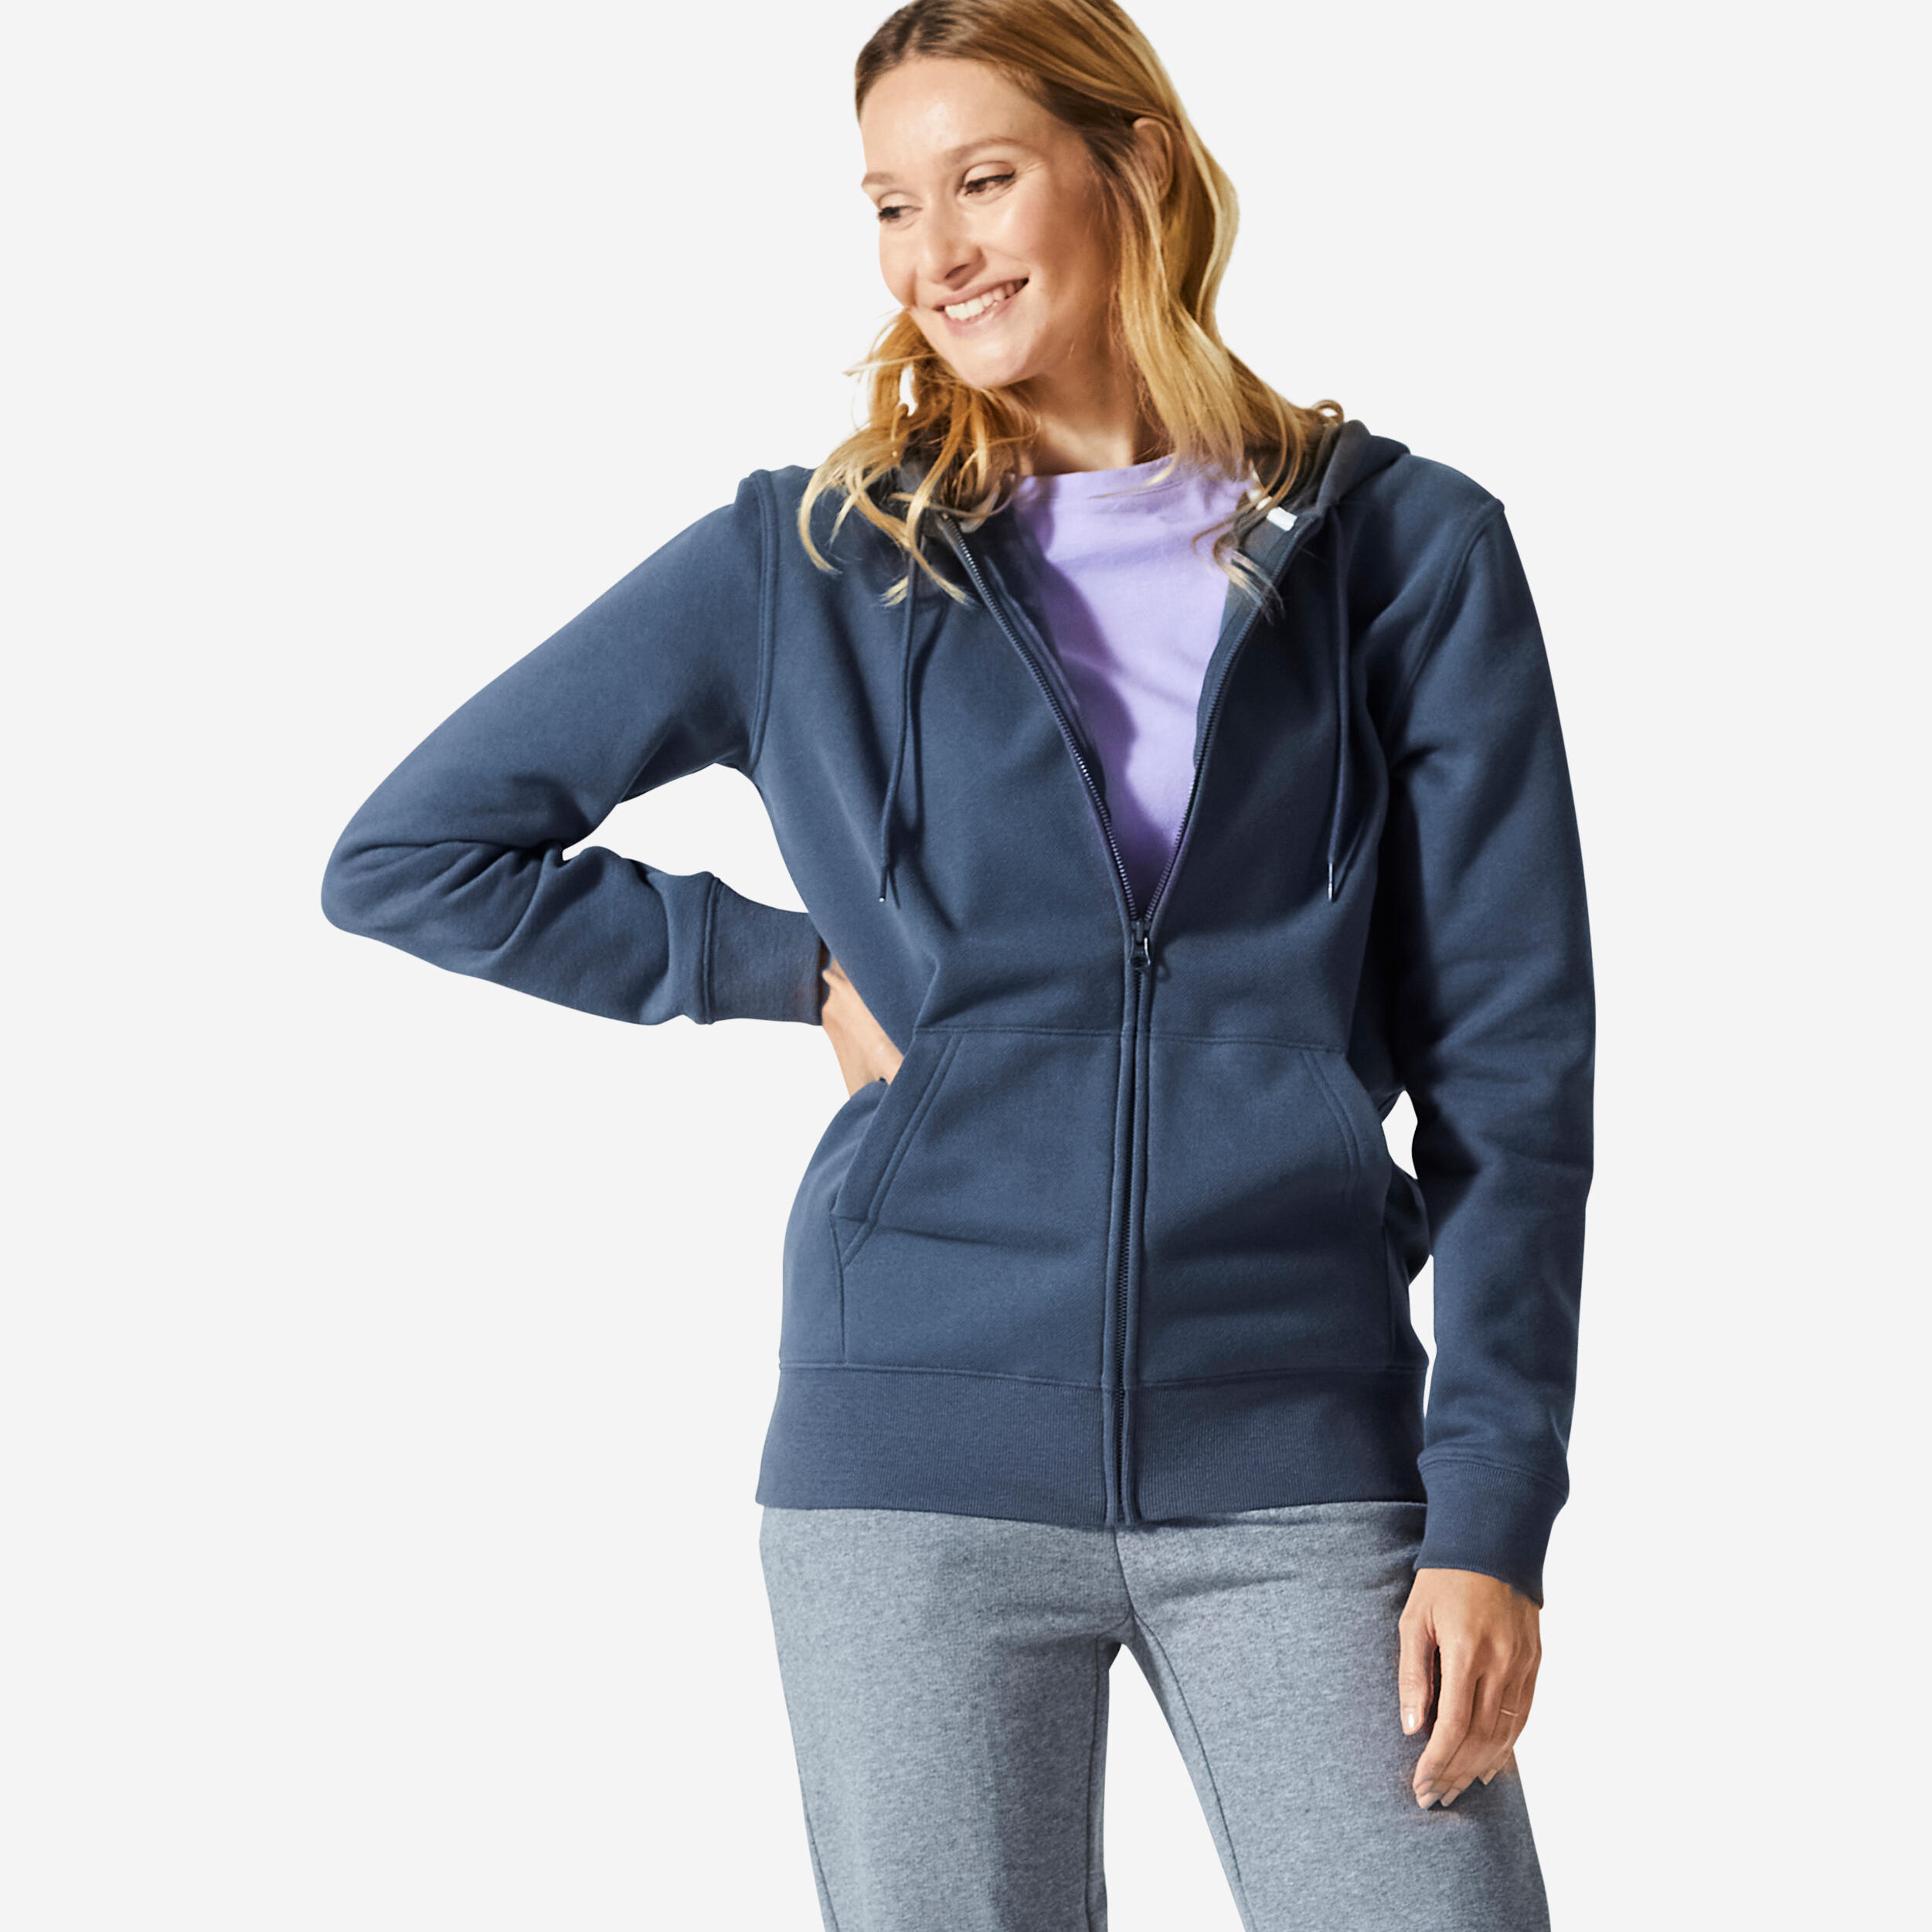 DOMYOS Women's Zip-Up Fitness Sweatshirt 500 Essentials - Abyss Grey